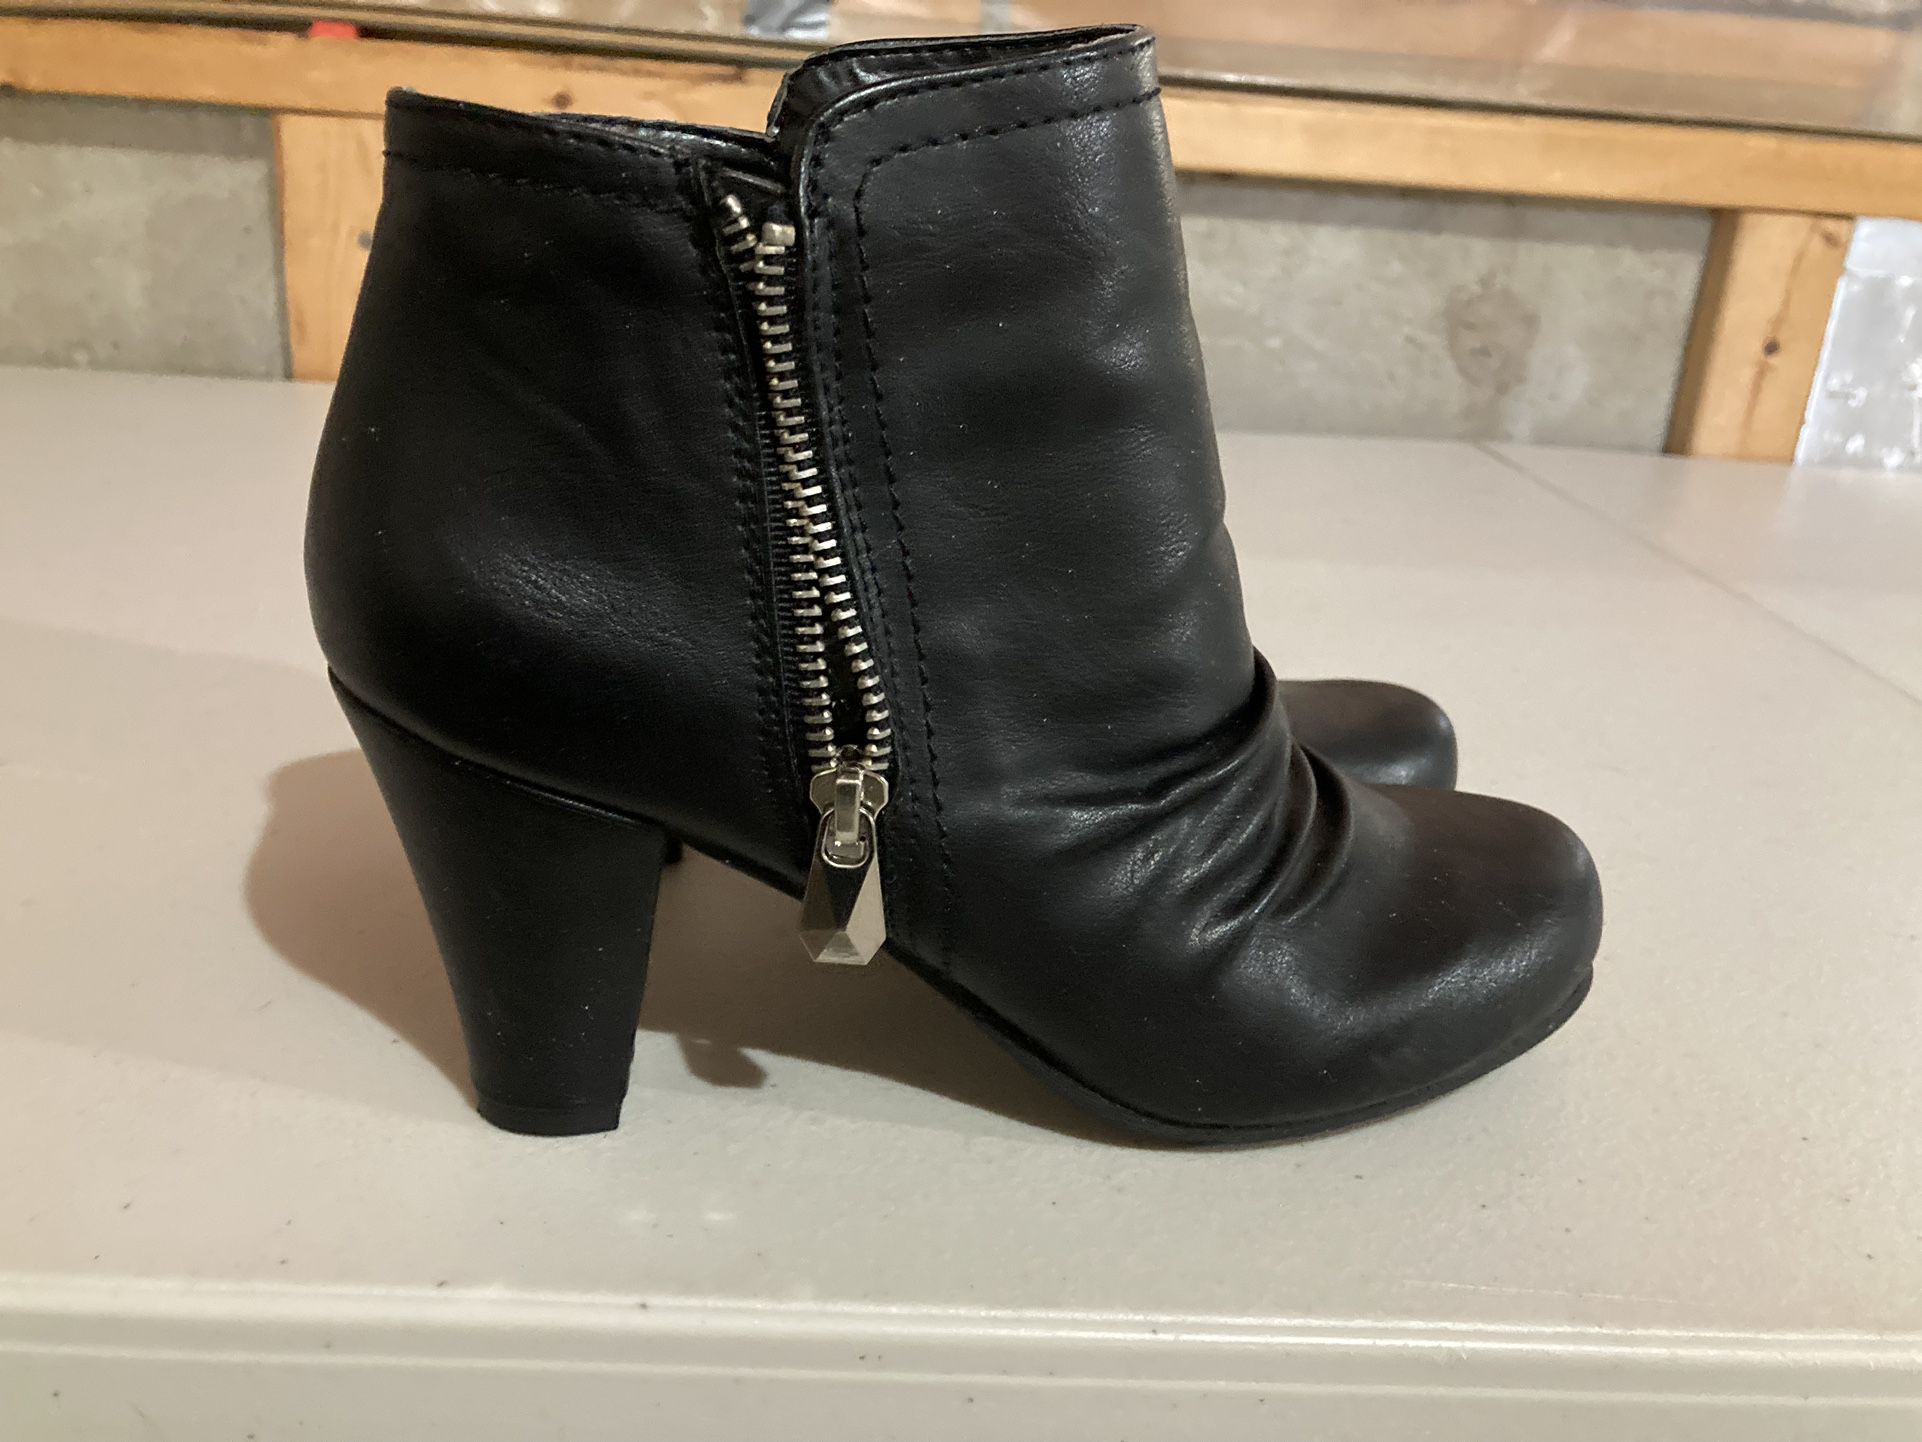 Women’s Black Boots Size 6 1/2